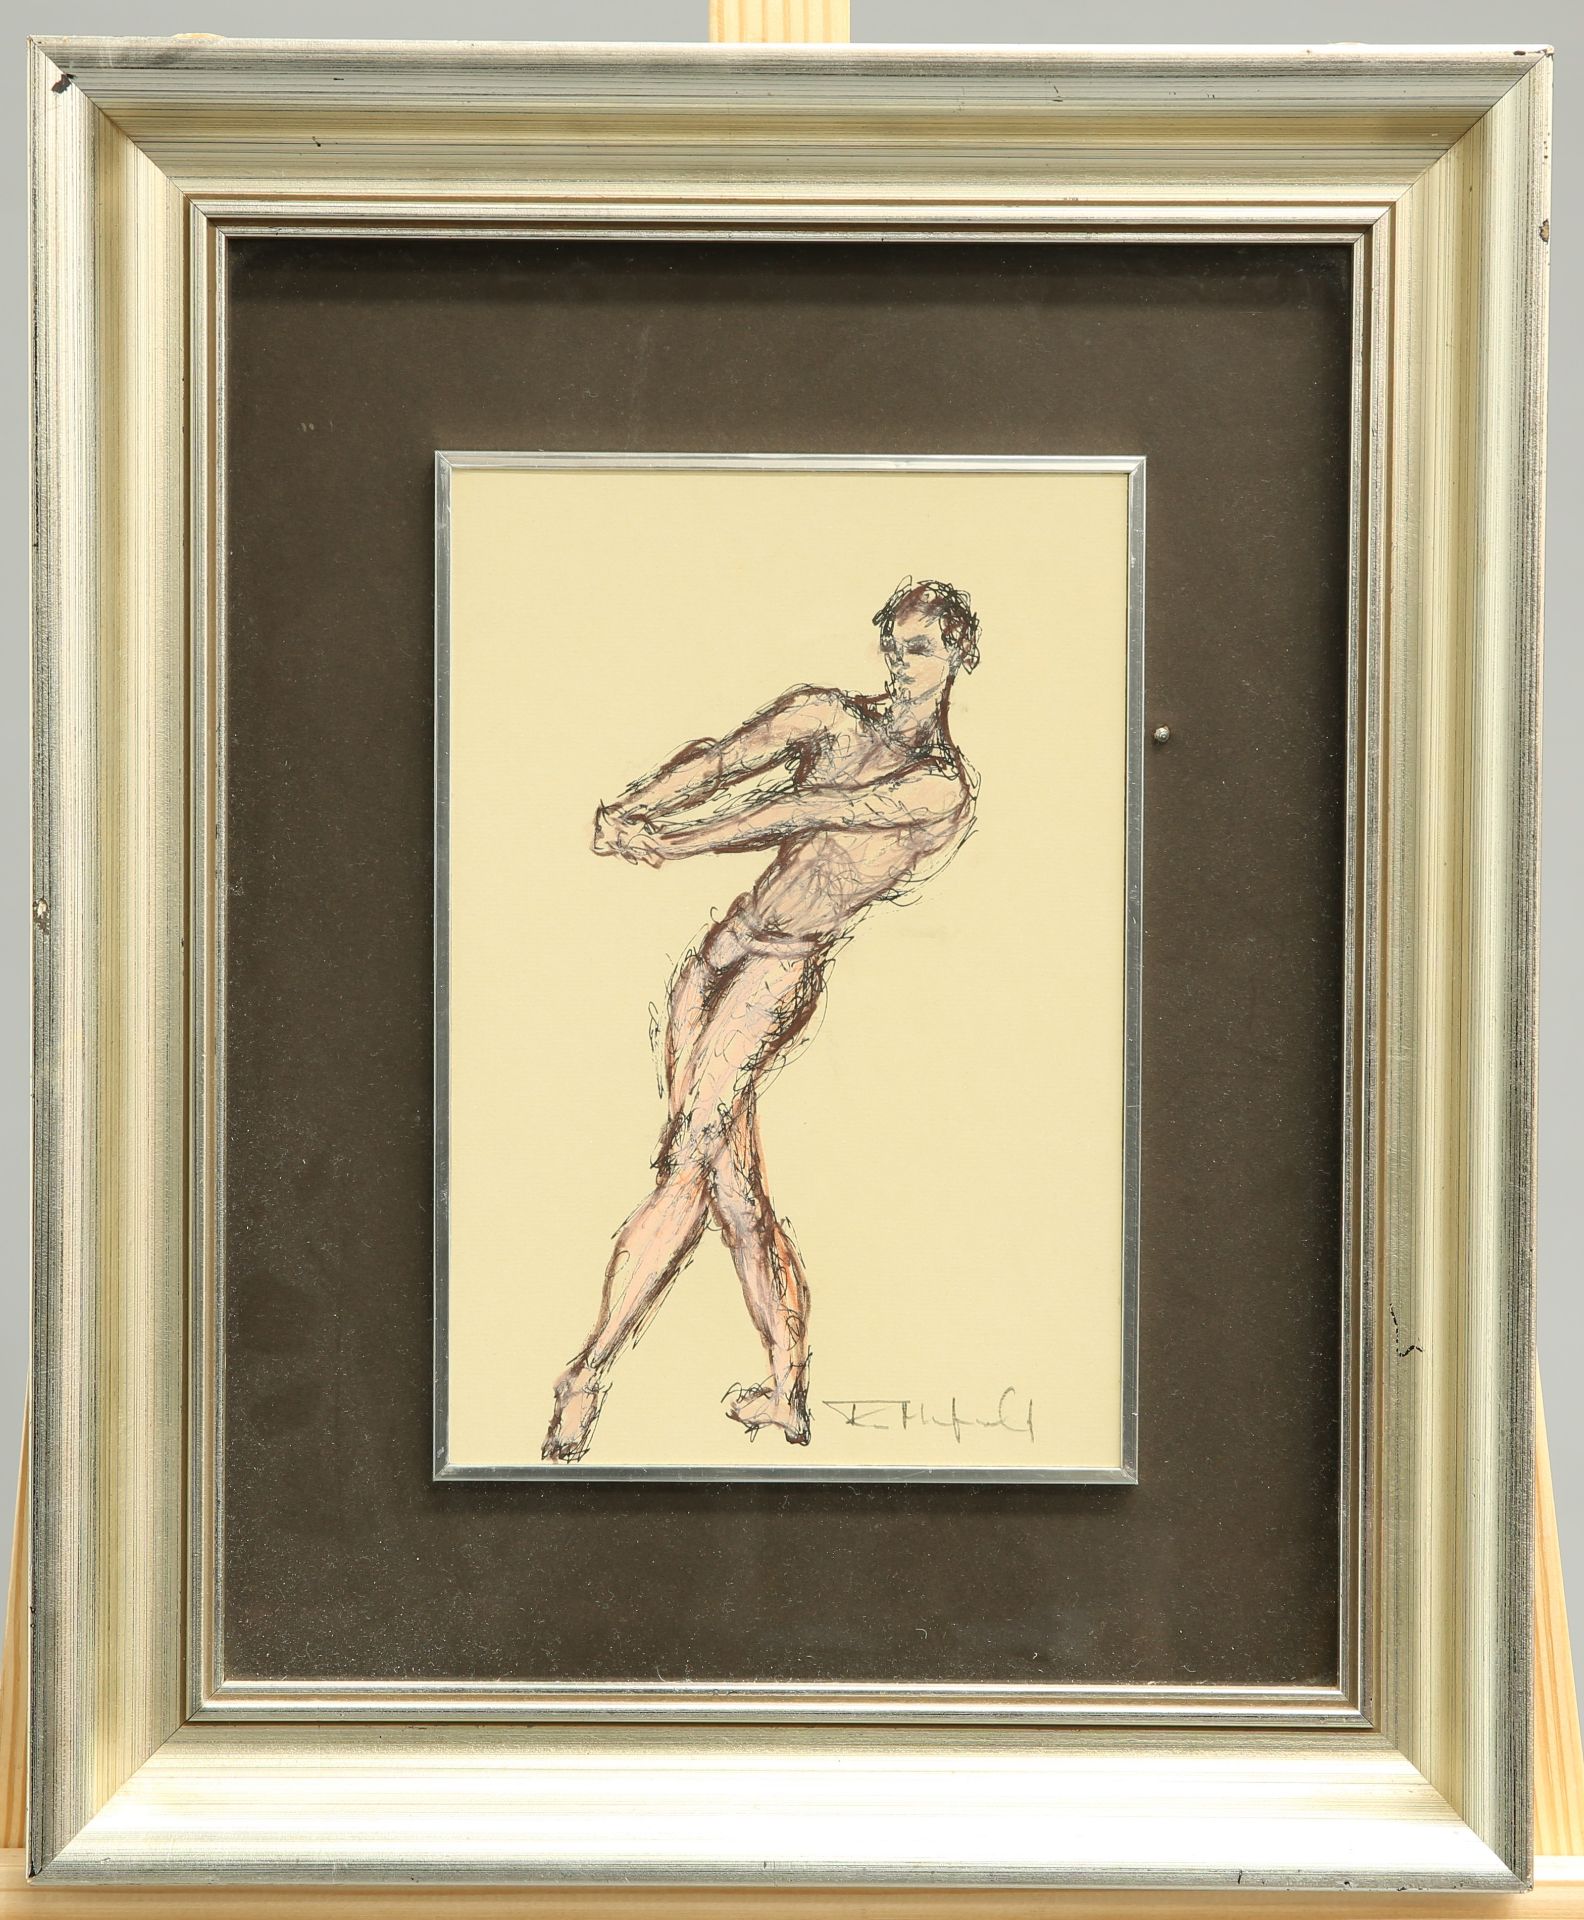 TOM MERRIFIELD (BORN 1932), MALE BALLET DANCER